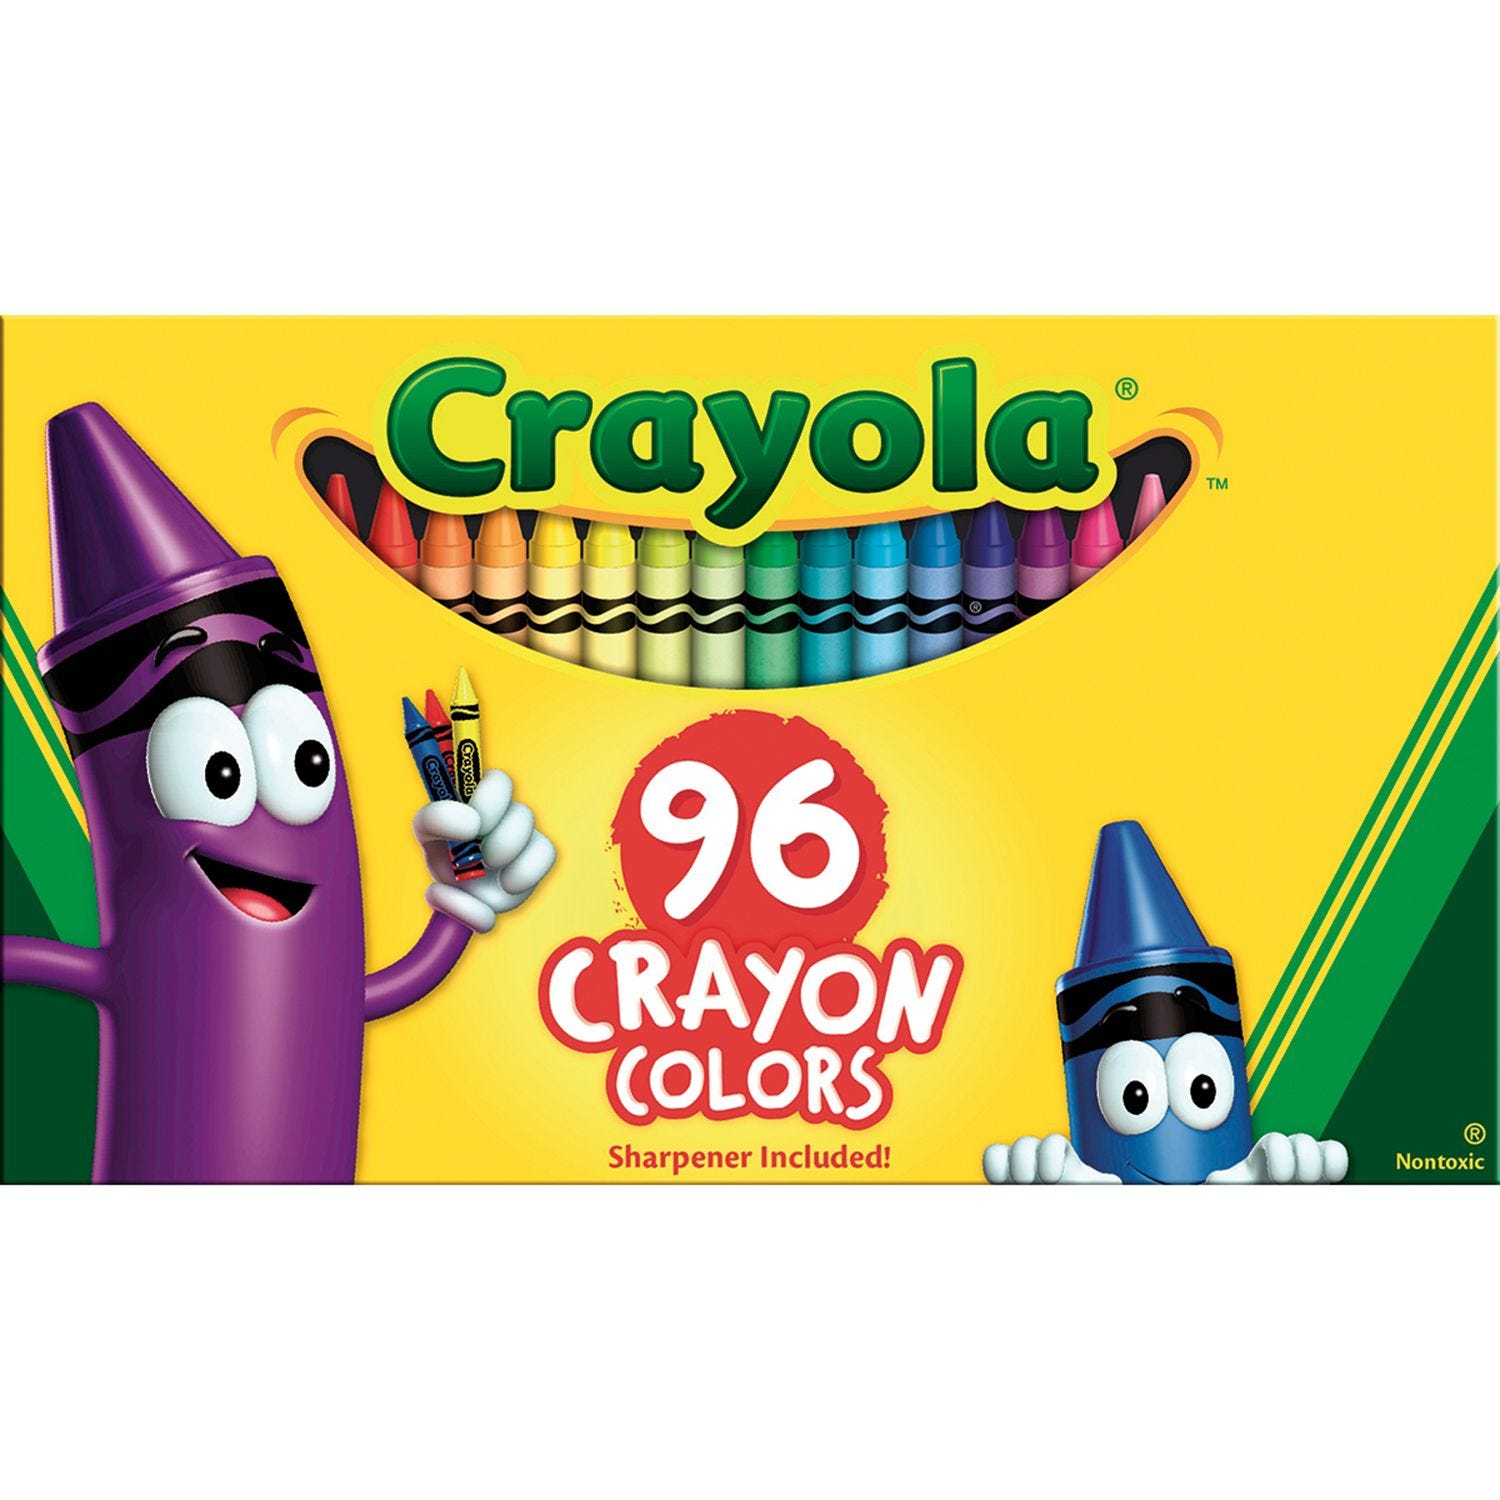 Crayon Rocks + Storage Box / 64 count